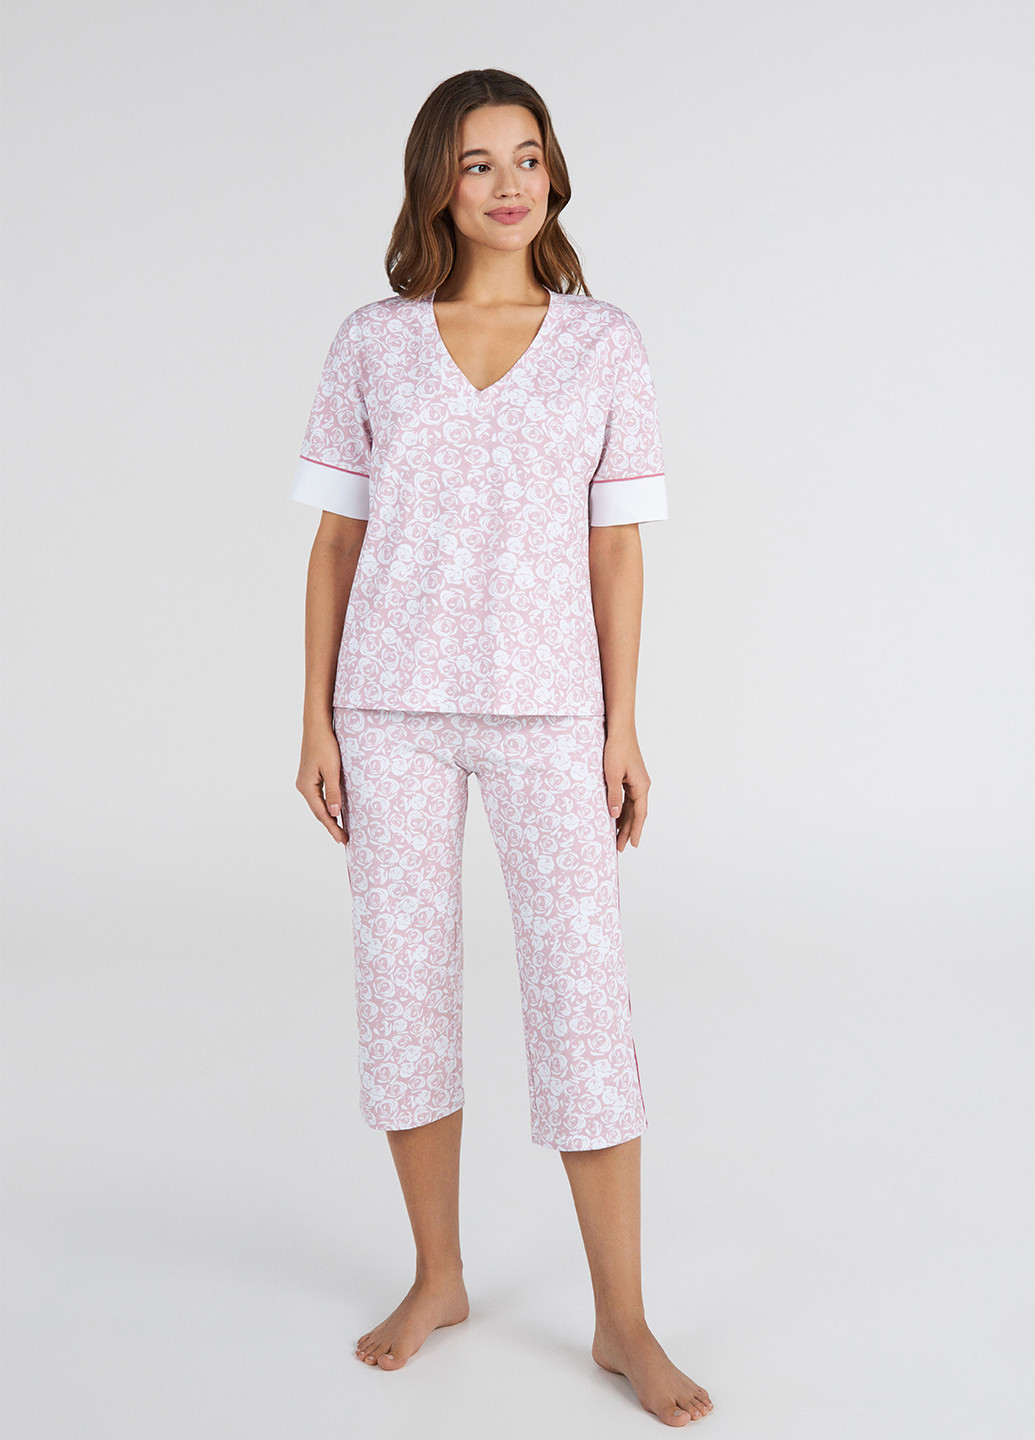 Розовая всесезон пижама (футболка, капри) футболка + капри Ellen